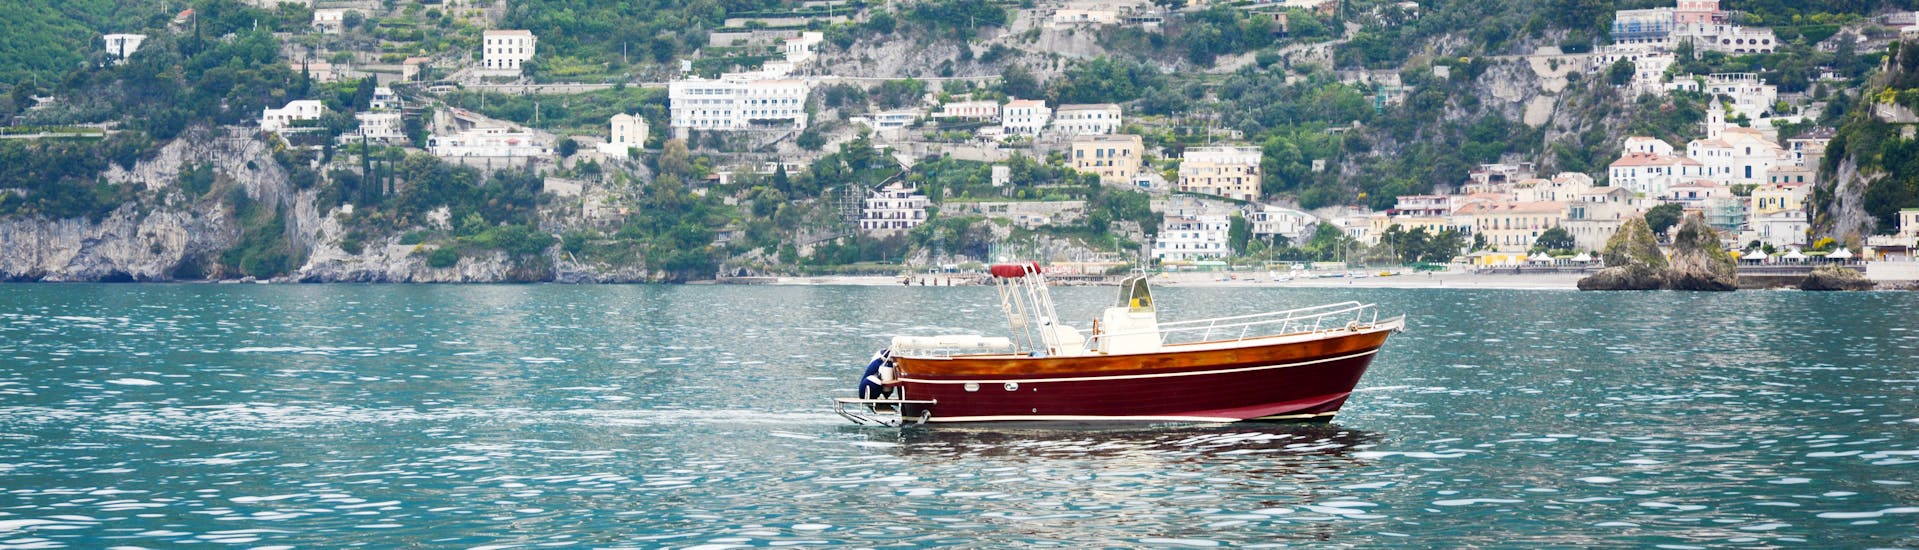 Le bateau de Blu Mediterraneo Amalfi Coast pendant la balade en bateau de Salerne le long de la côte amalfitaine.